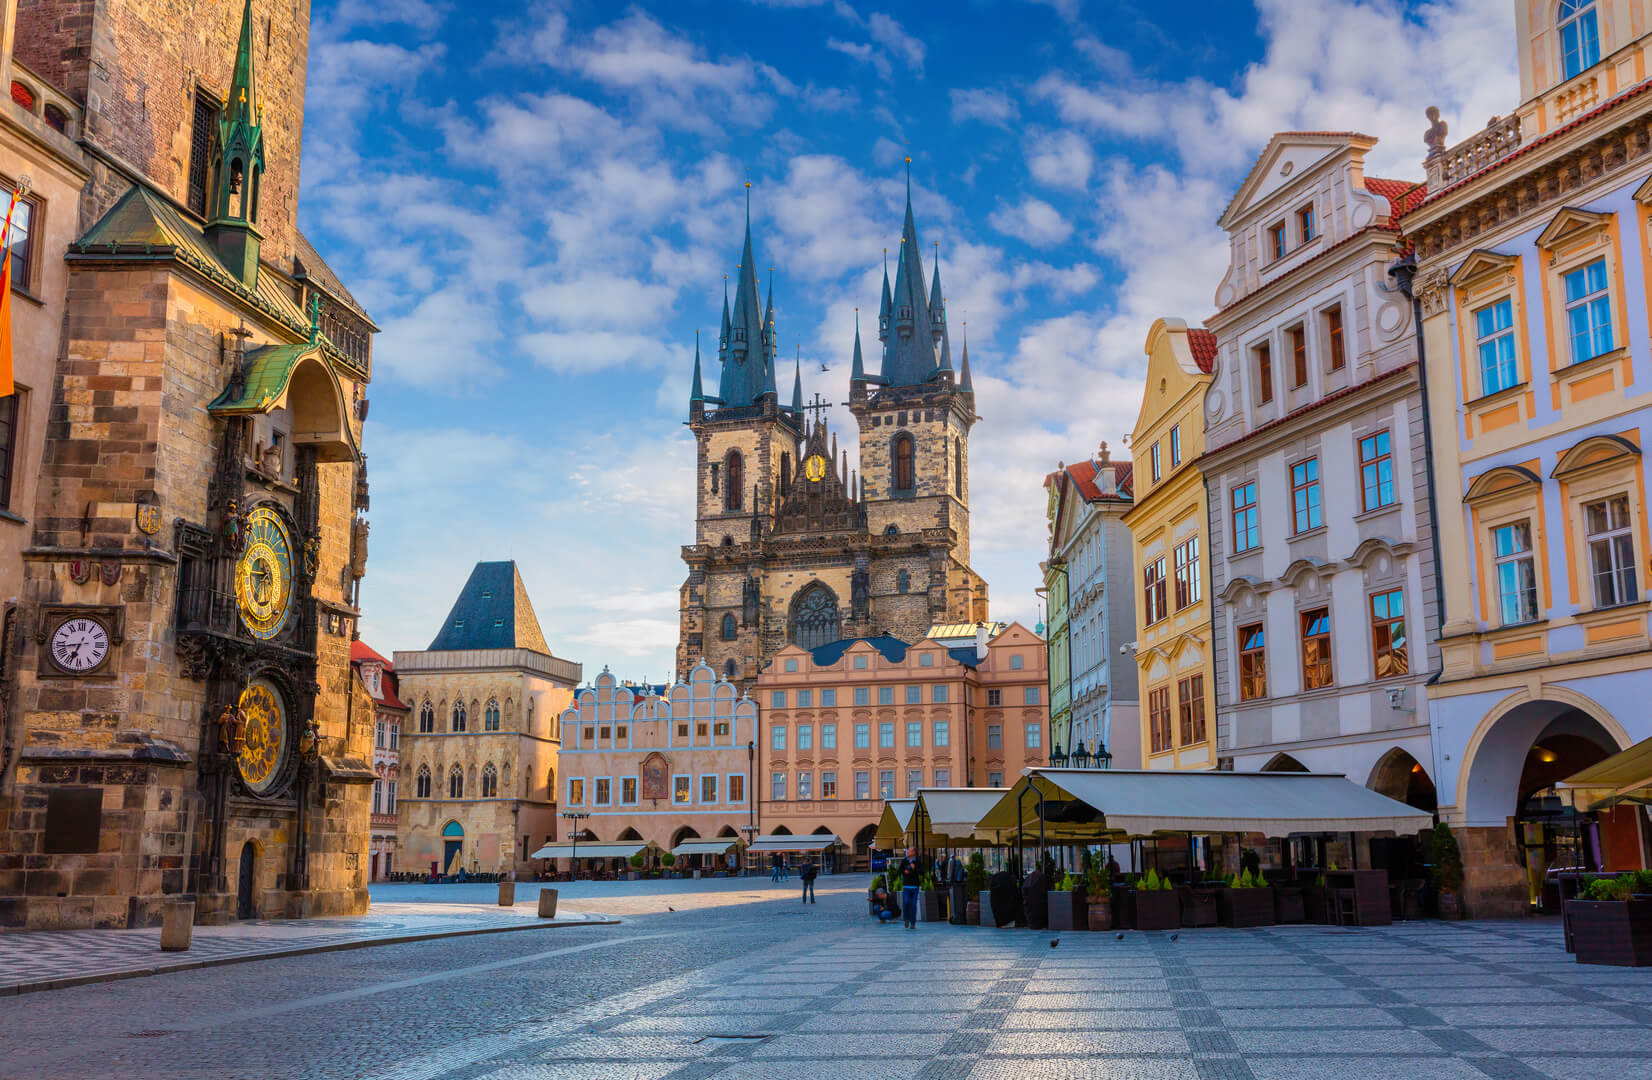 Весеннее утро на Староместской площади с Тынской церковью. Солнечный городской пейзаж в столице Чехии - Праге, Европа. Пост-обработанная фотография в художественном стиле